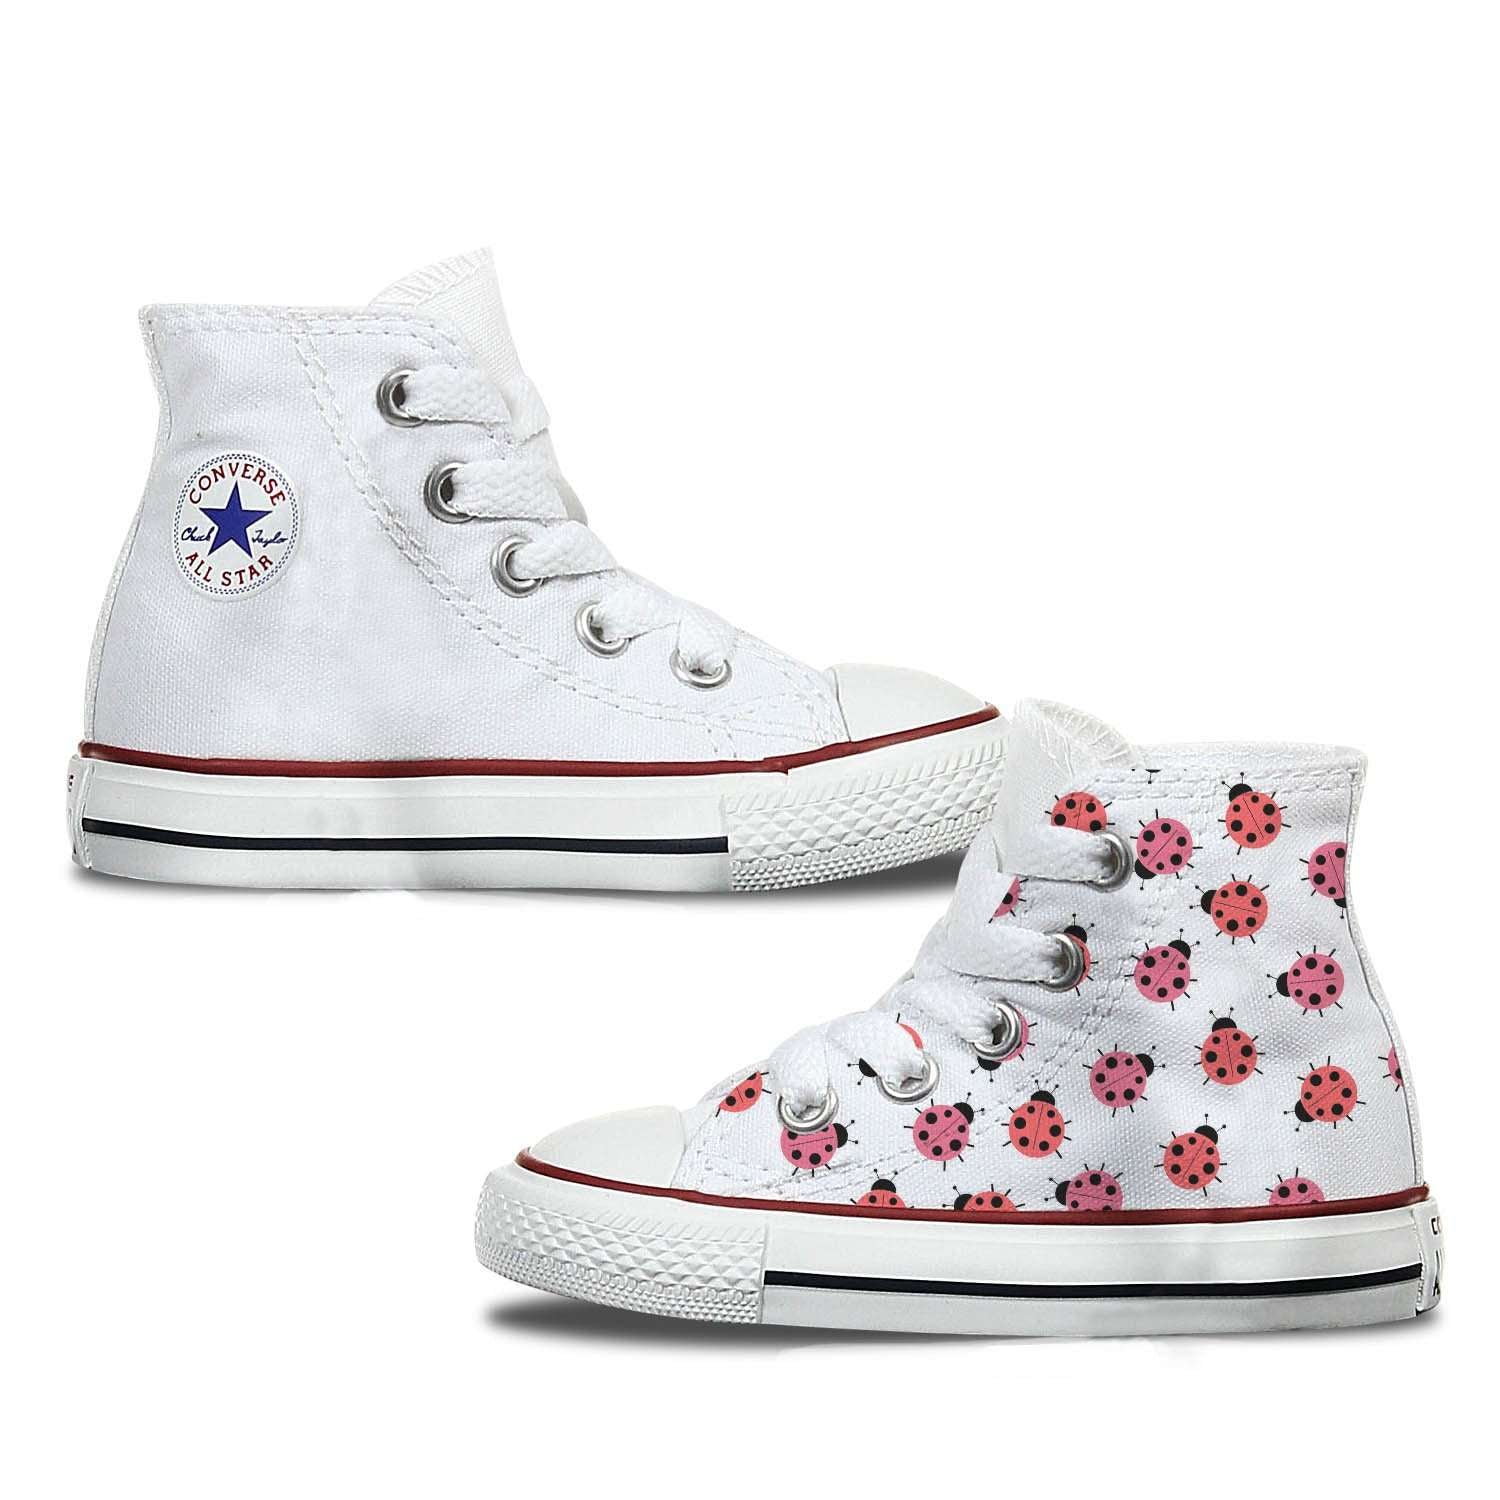 ladybug converse shoes